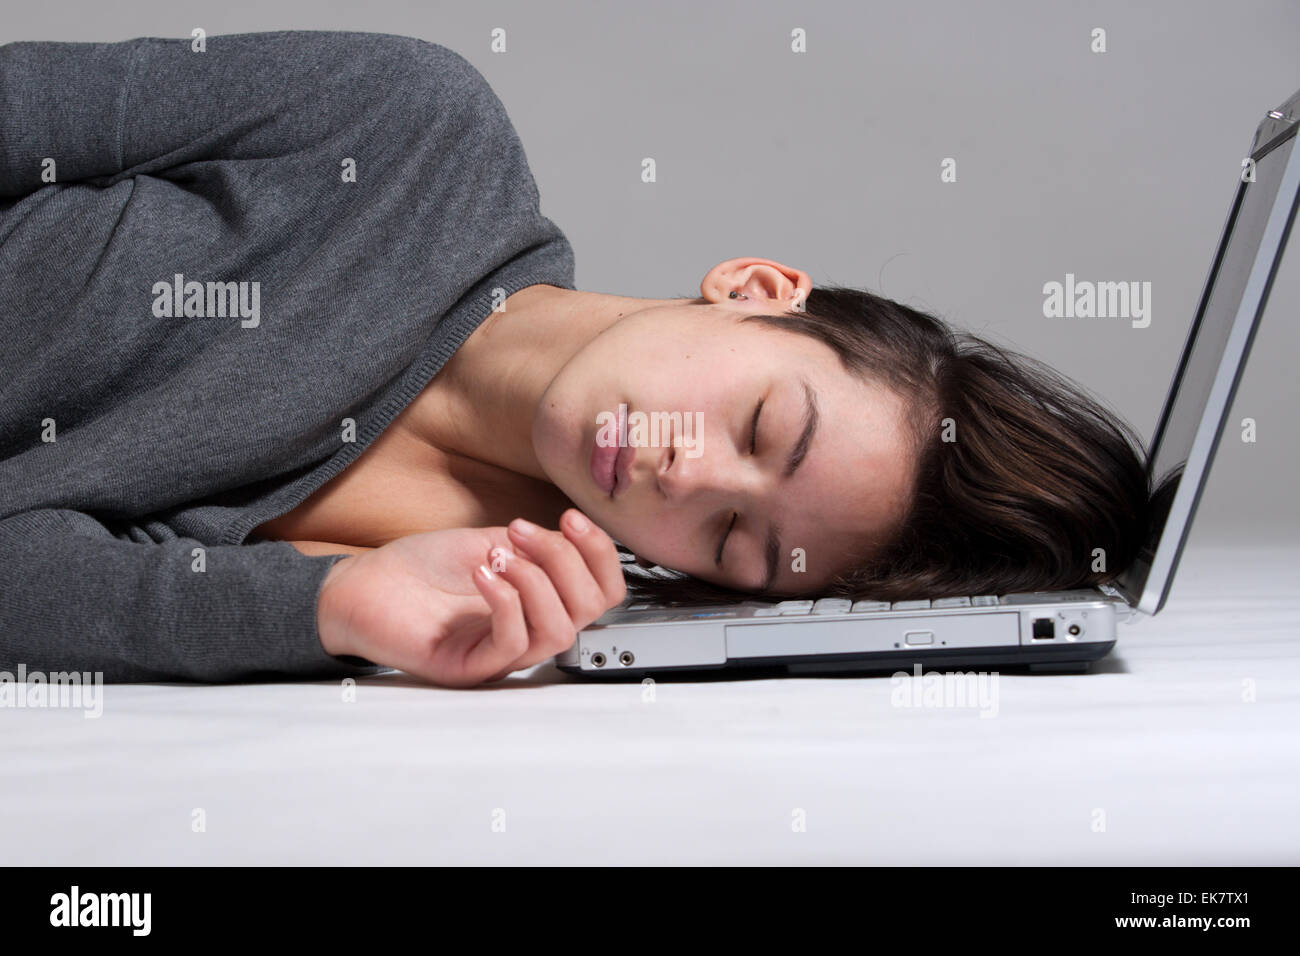 Junge Frau am Boden mit notebook Stockfoto